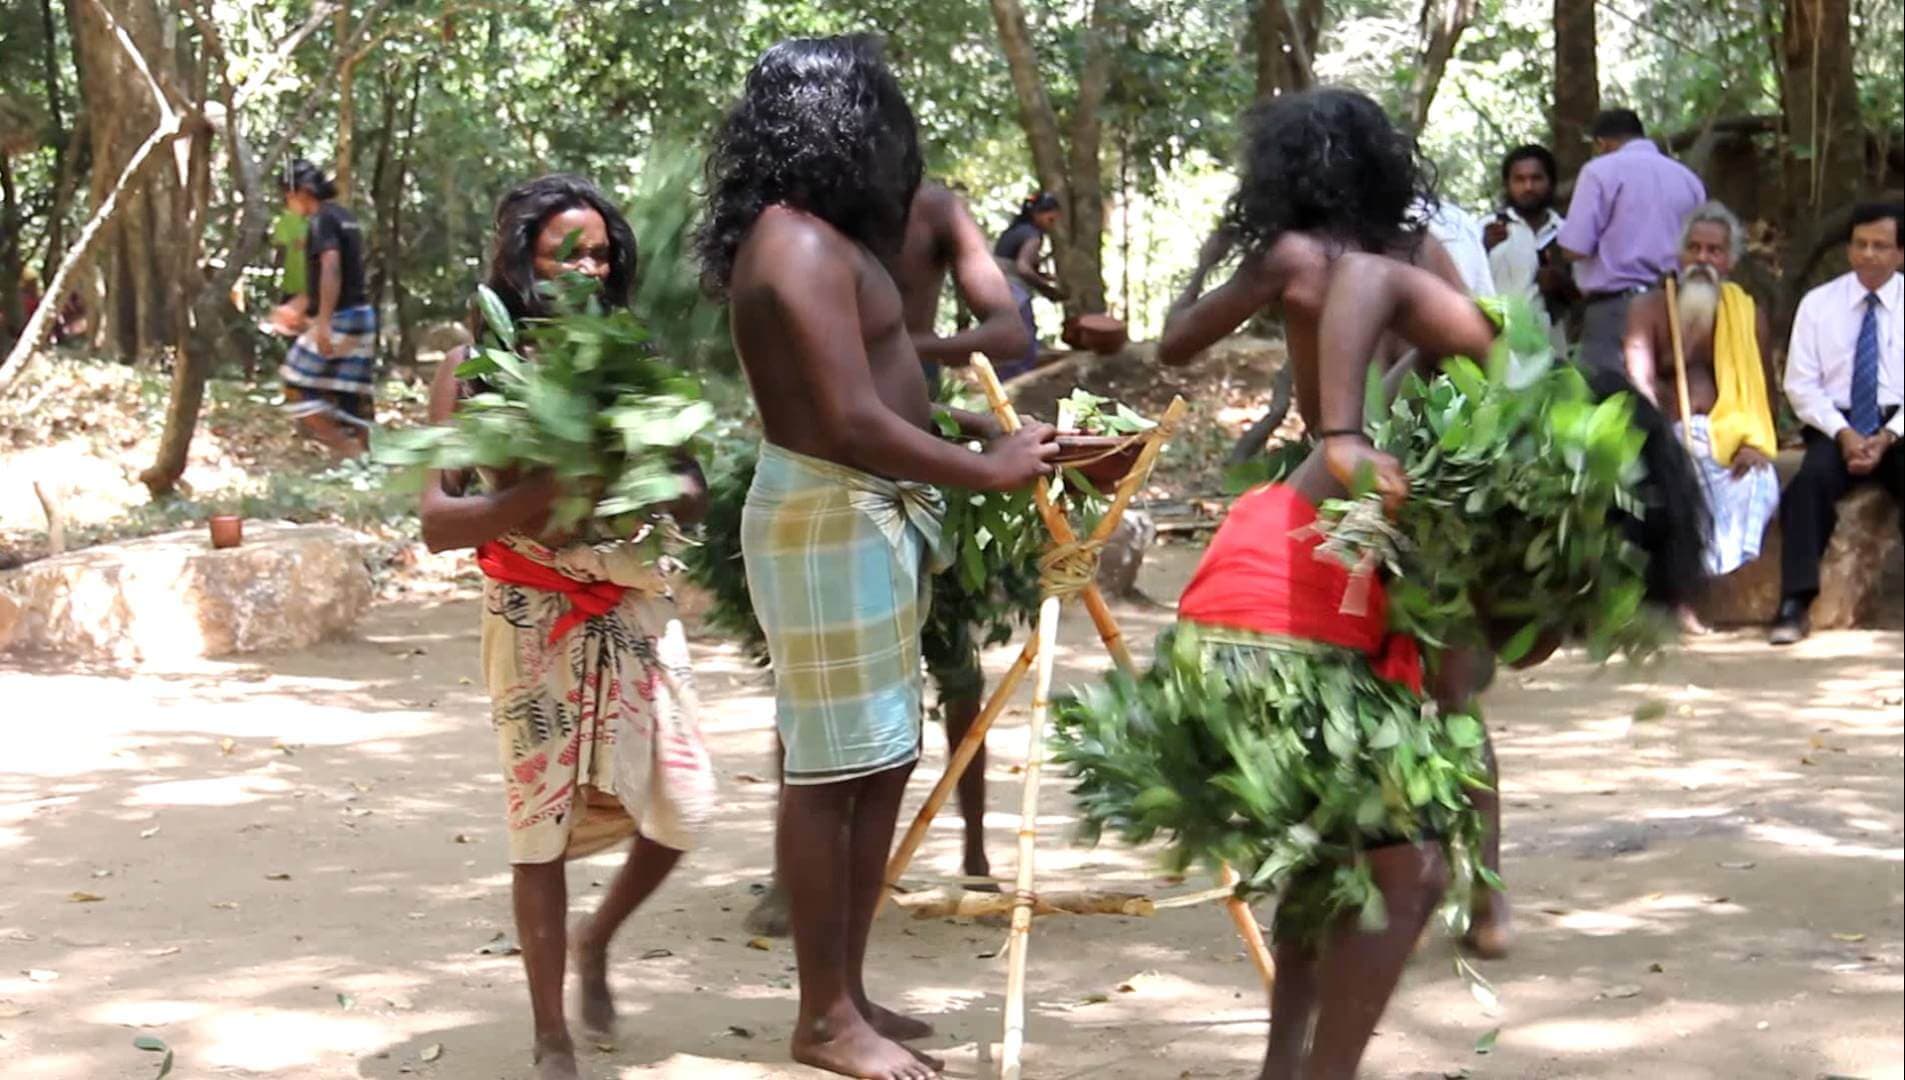 Native Vedda dancing event in Sri Lanka.